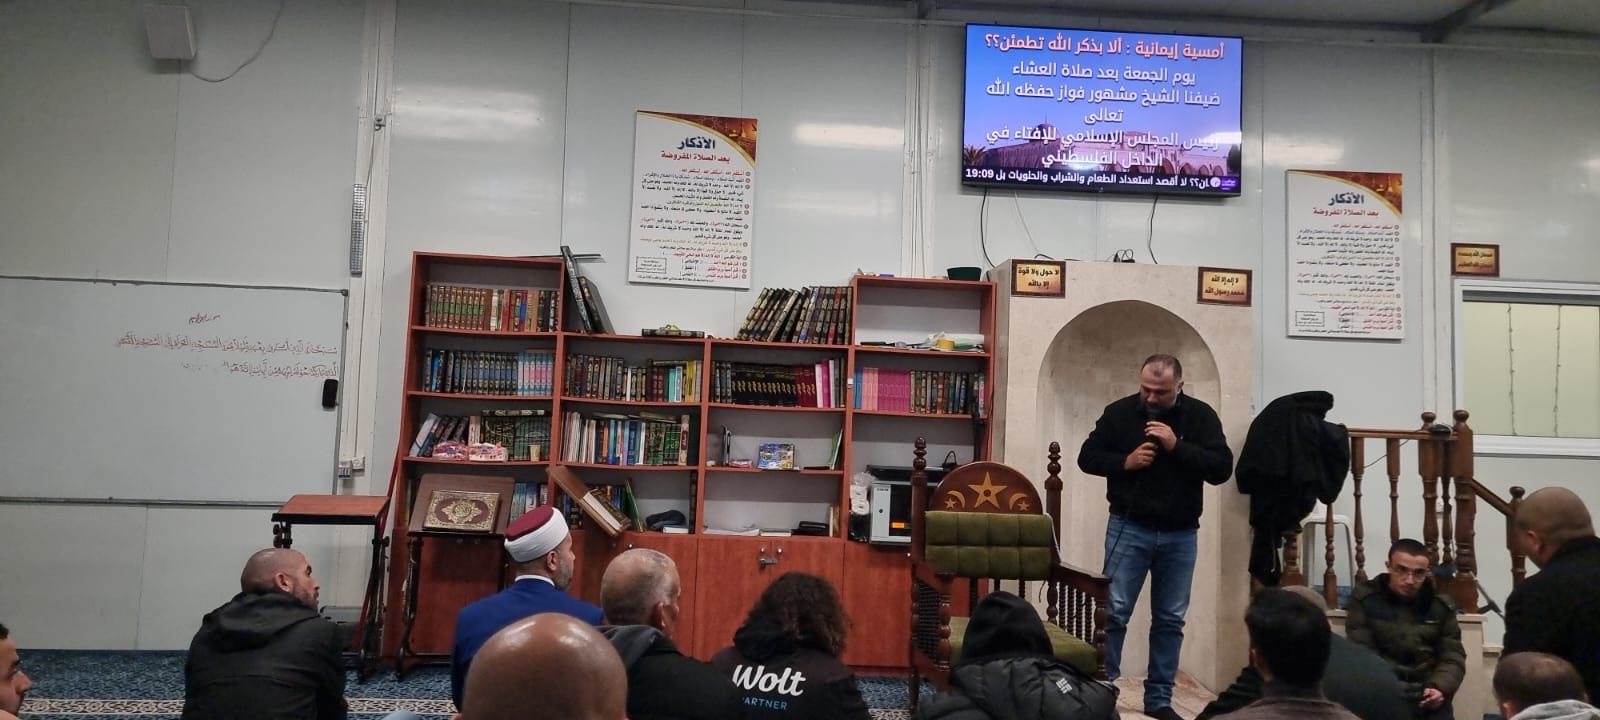 فيديو: أمسية ايمانية بمشاركة الشيخ د. مشهور فواز في مسجد الريان بمدينة يافا